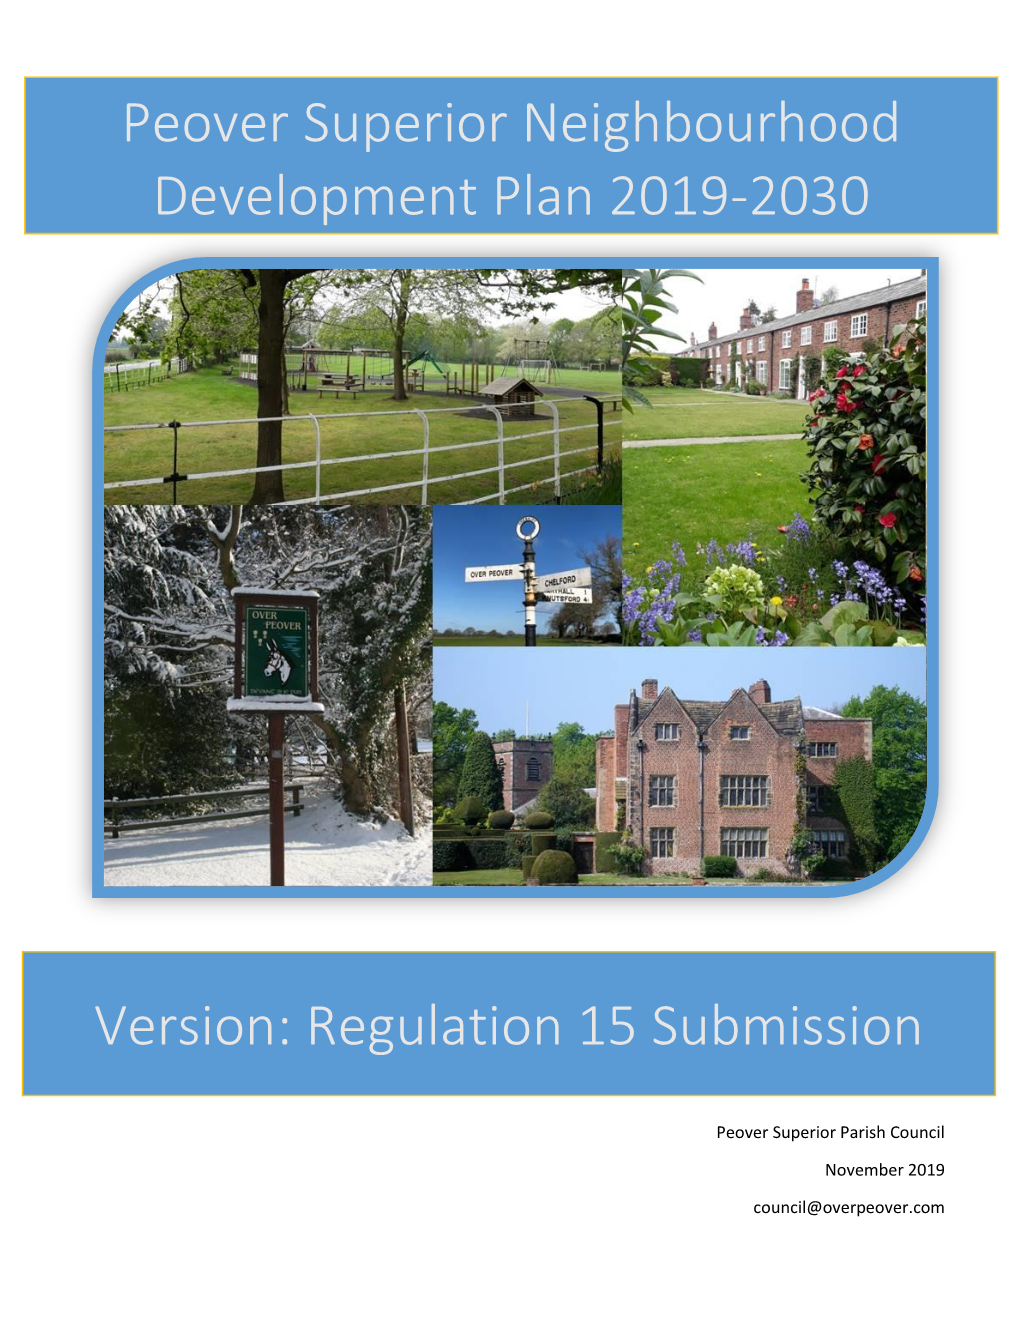 Peover Superior Neighbourhood Development Plan 2019-2030